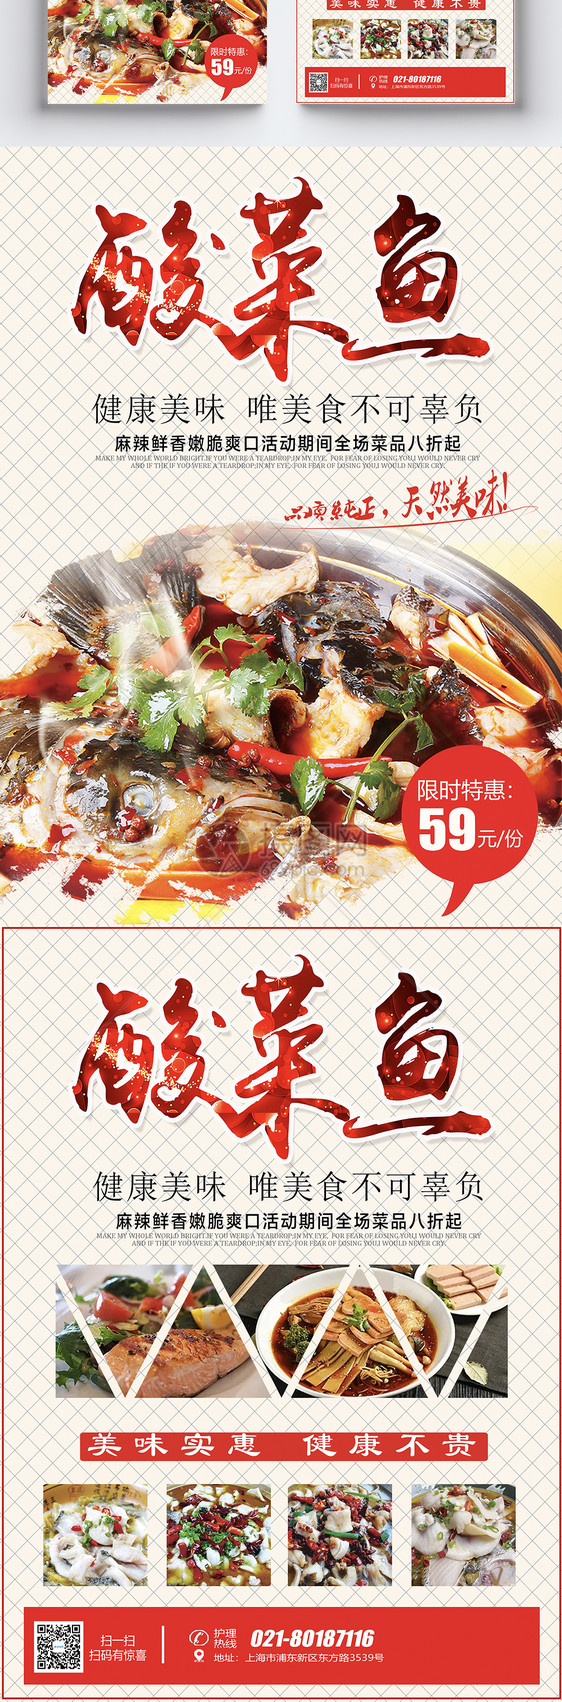 酸菜鱼美食宣传单图片